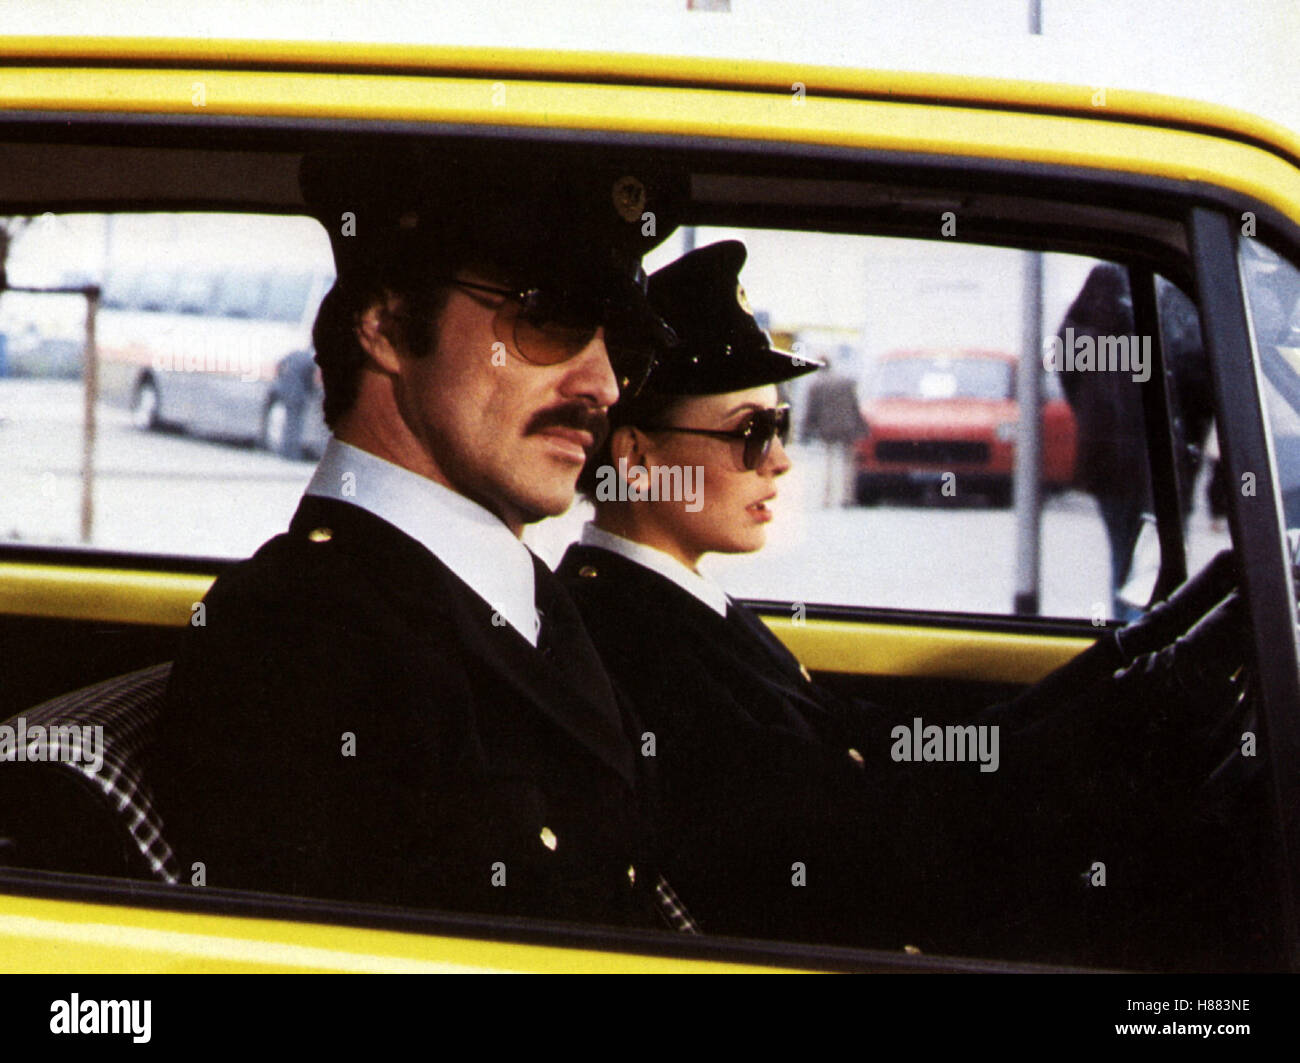 Der Löwe zeigt die Krallen, (ROUGH CUT) GB 1980, Regie: Don Siegel, Burt Reynolds + LESLEY-ANNE DOWN, Stichwort: Polizei, uniforme Foto Stock